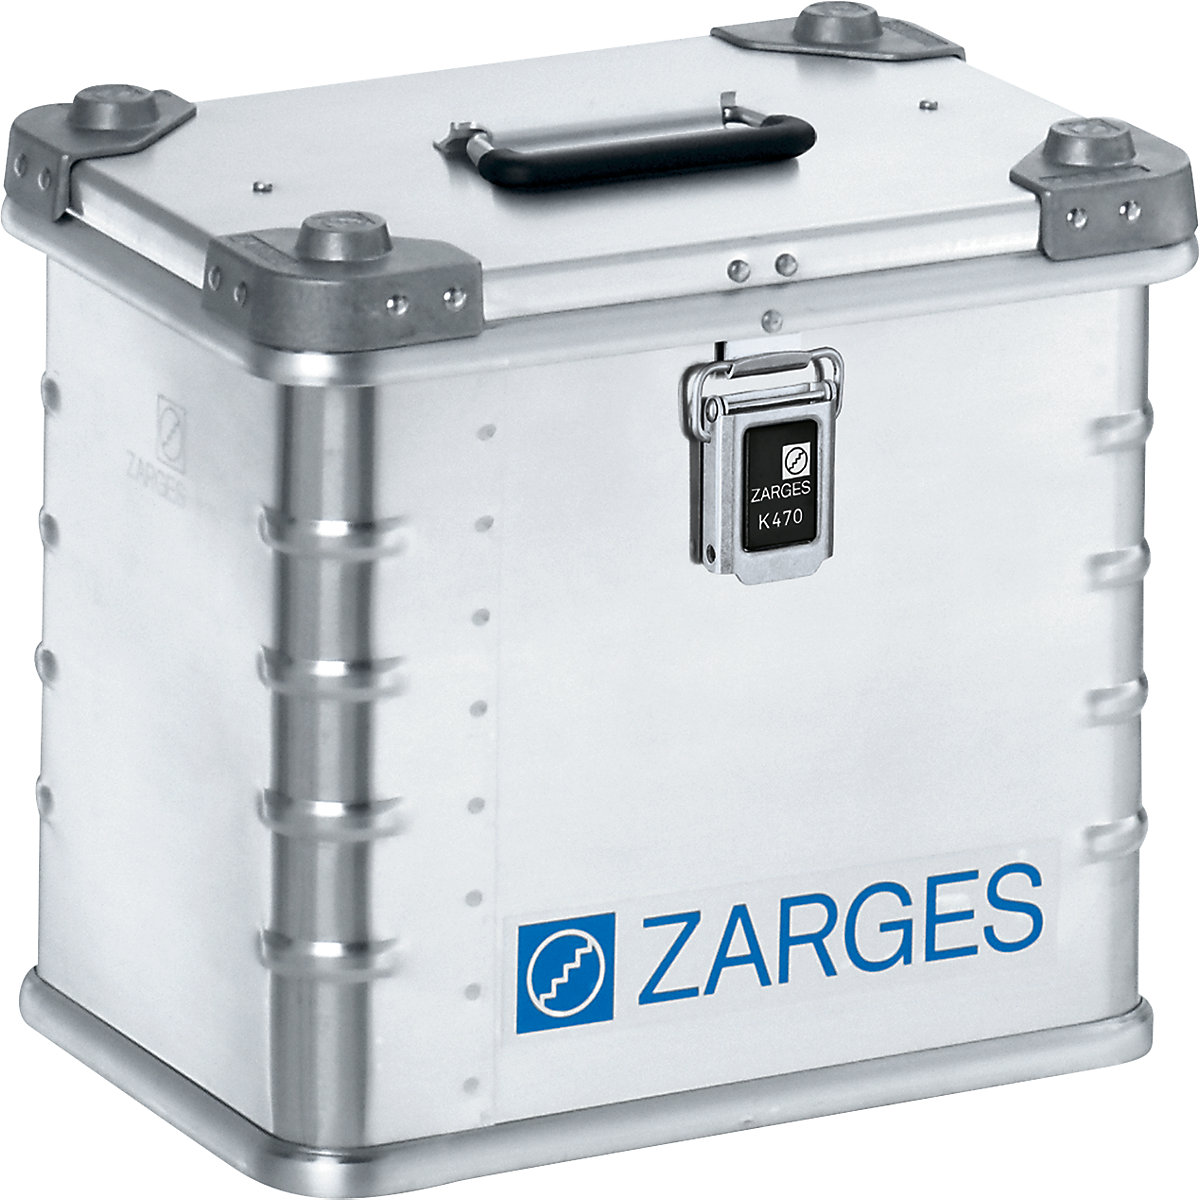 Caja de transporte de aluminio – ZARGES